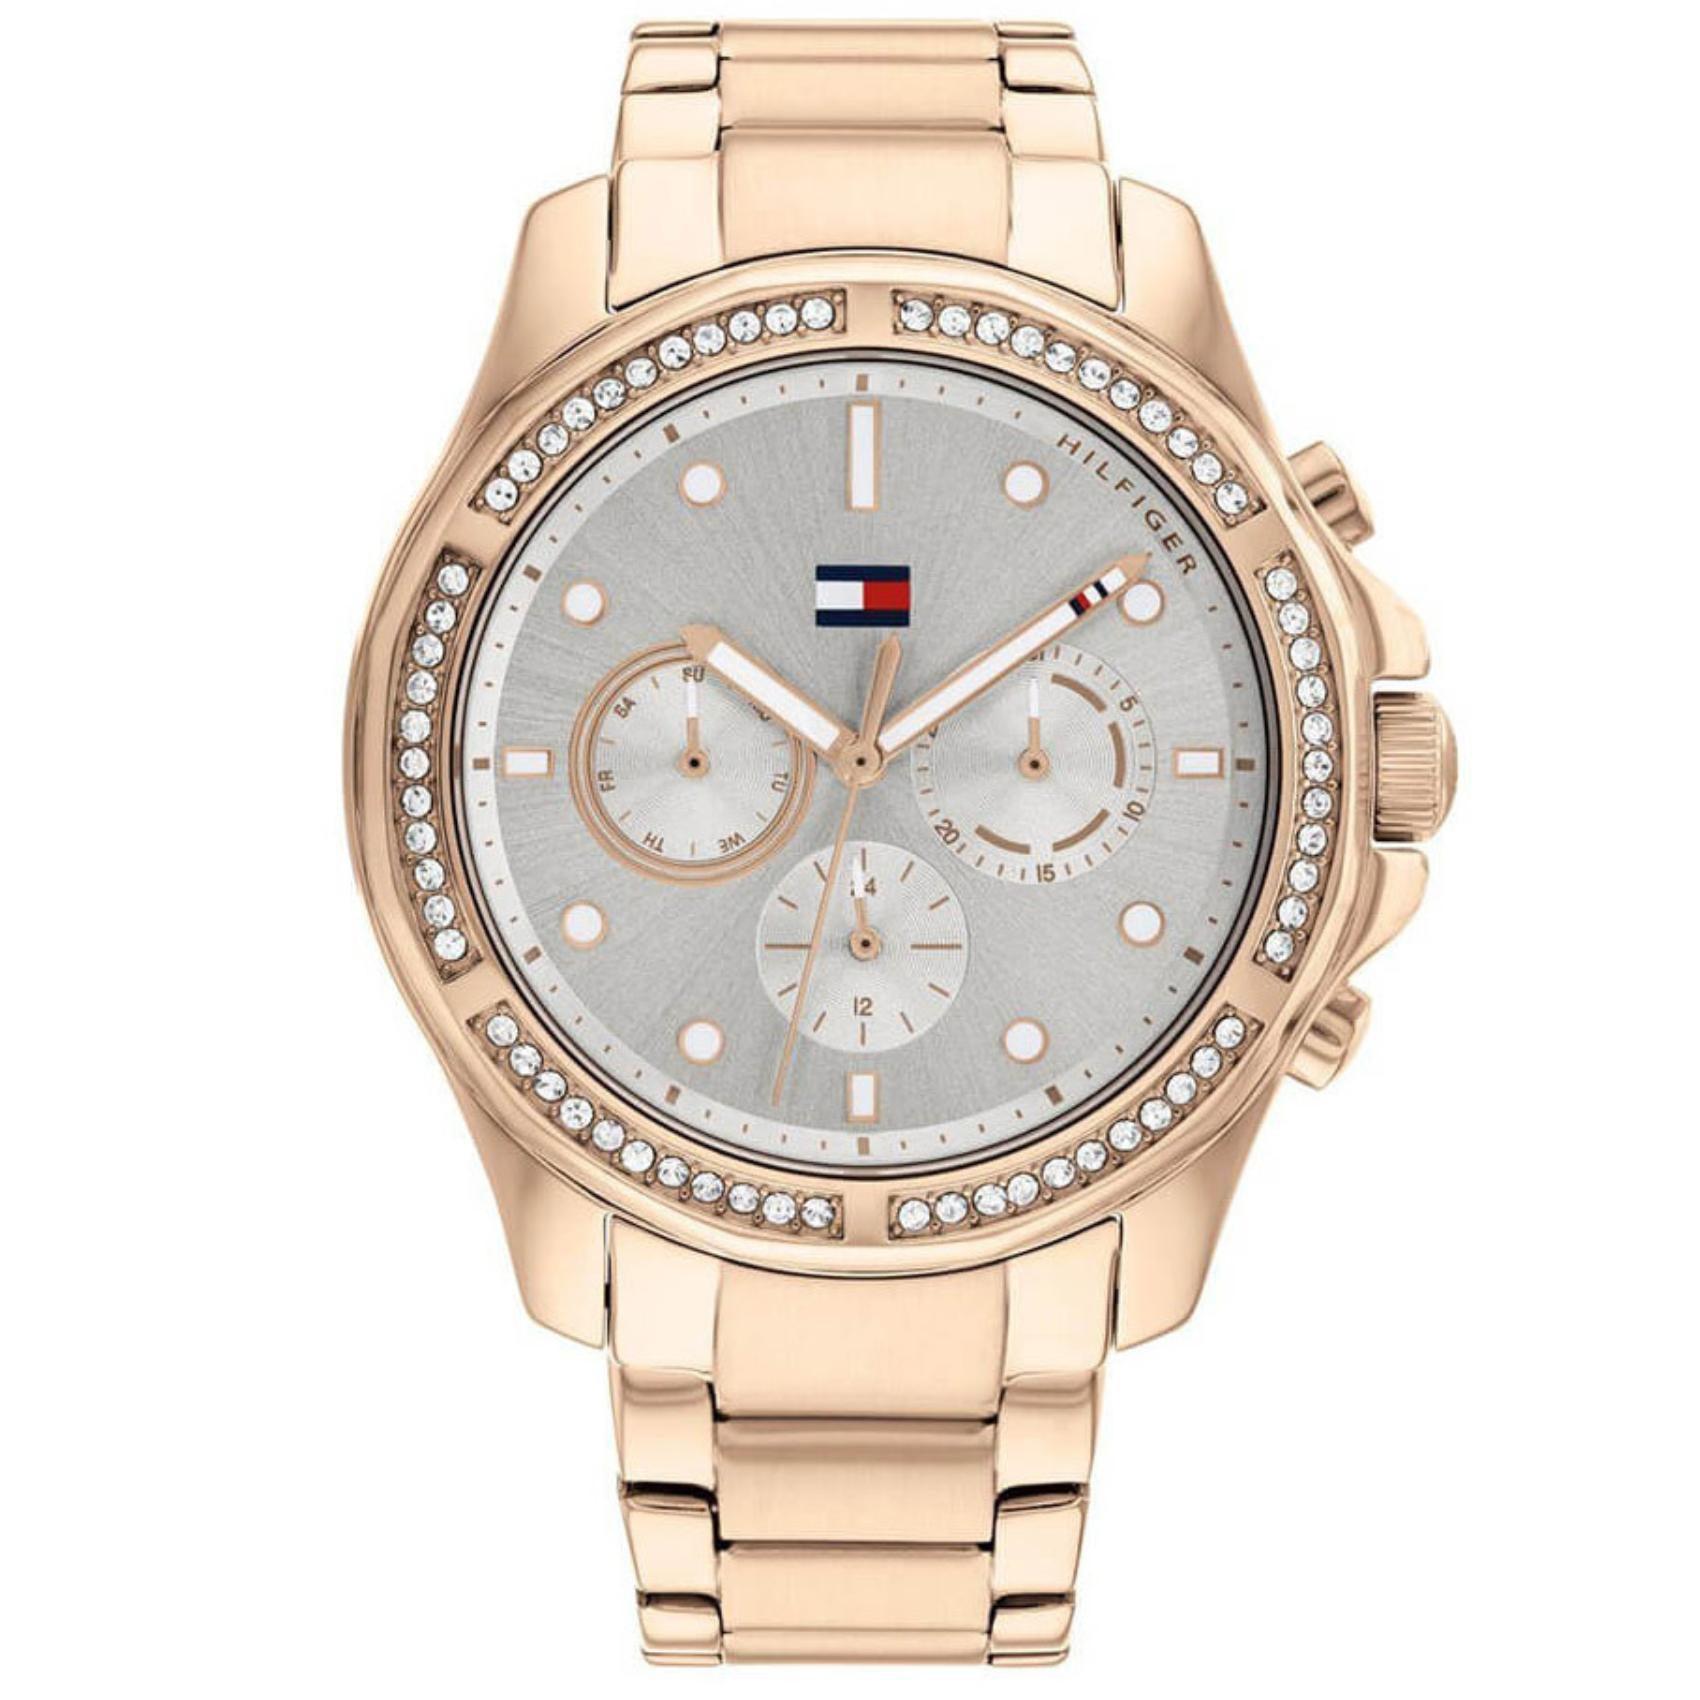 Γυναικείο ρολόι Tommy Hilfiger Brooklyn 1782572 με ροζ χρυσό ατσάλινο μπρασελέ και ασημί καντράν διαμέτρου 40mm με ζιργκόν.